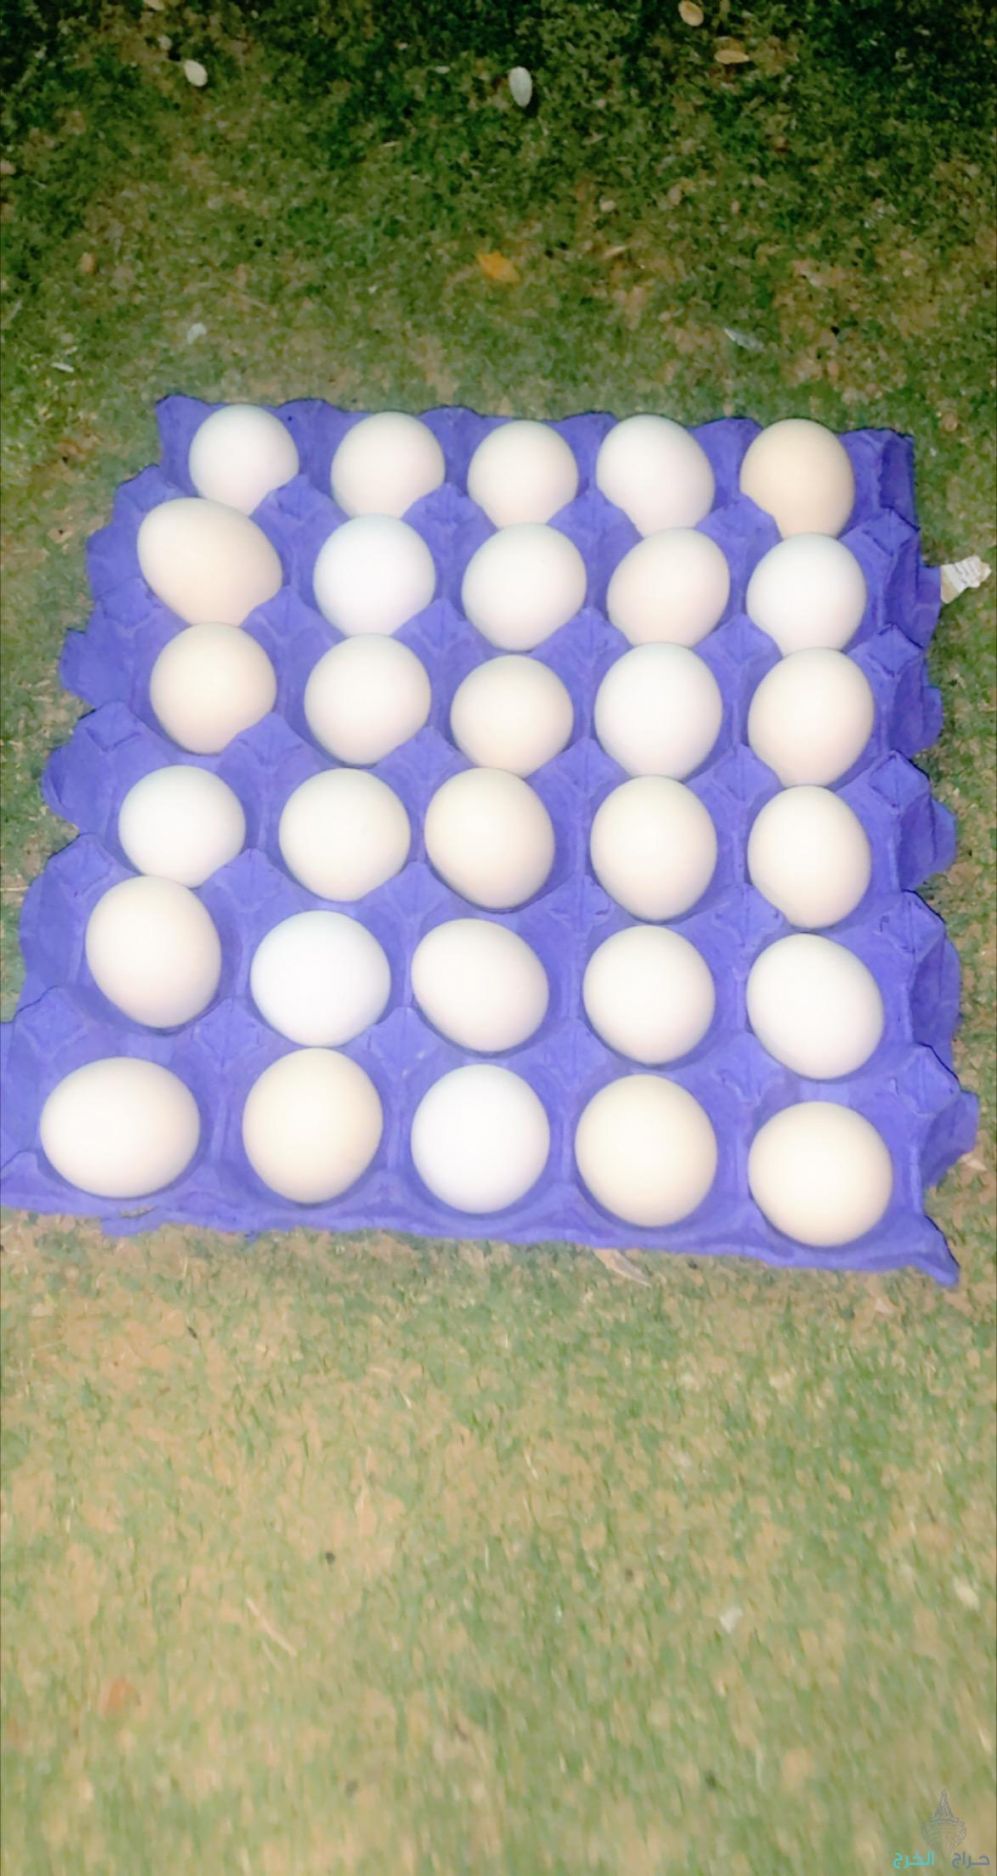 بيض بلدي طازج يومي من المزرعه في اليمامه للأكل والتفقيس  الطبق ب ٢٠ريال 